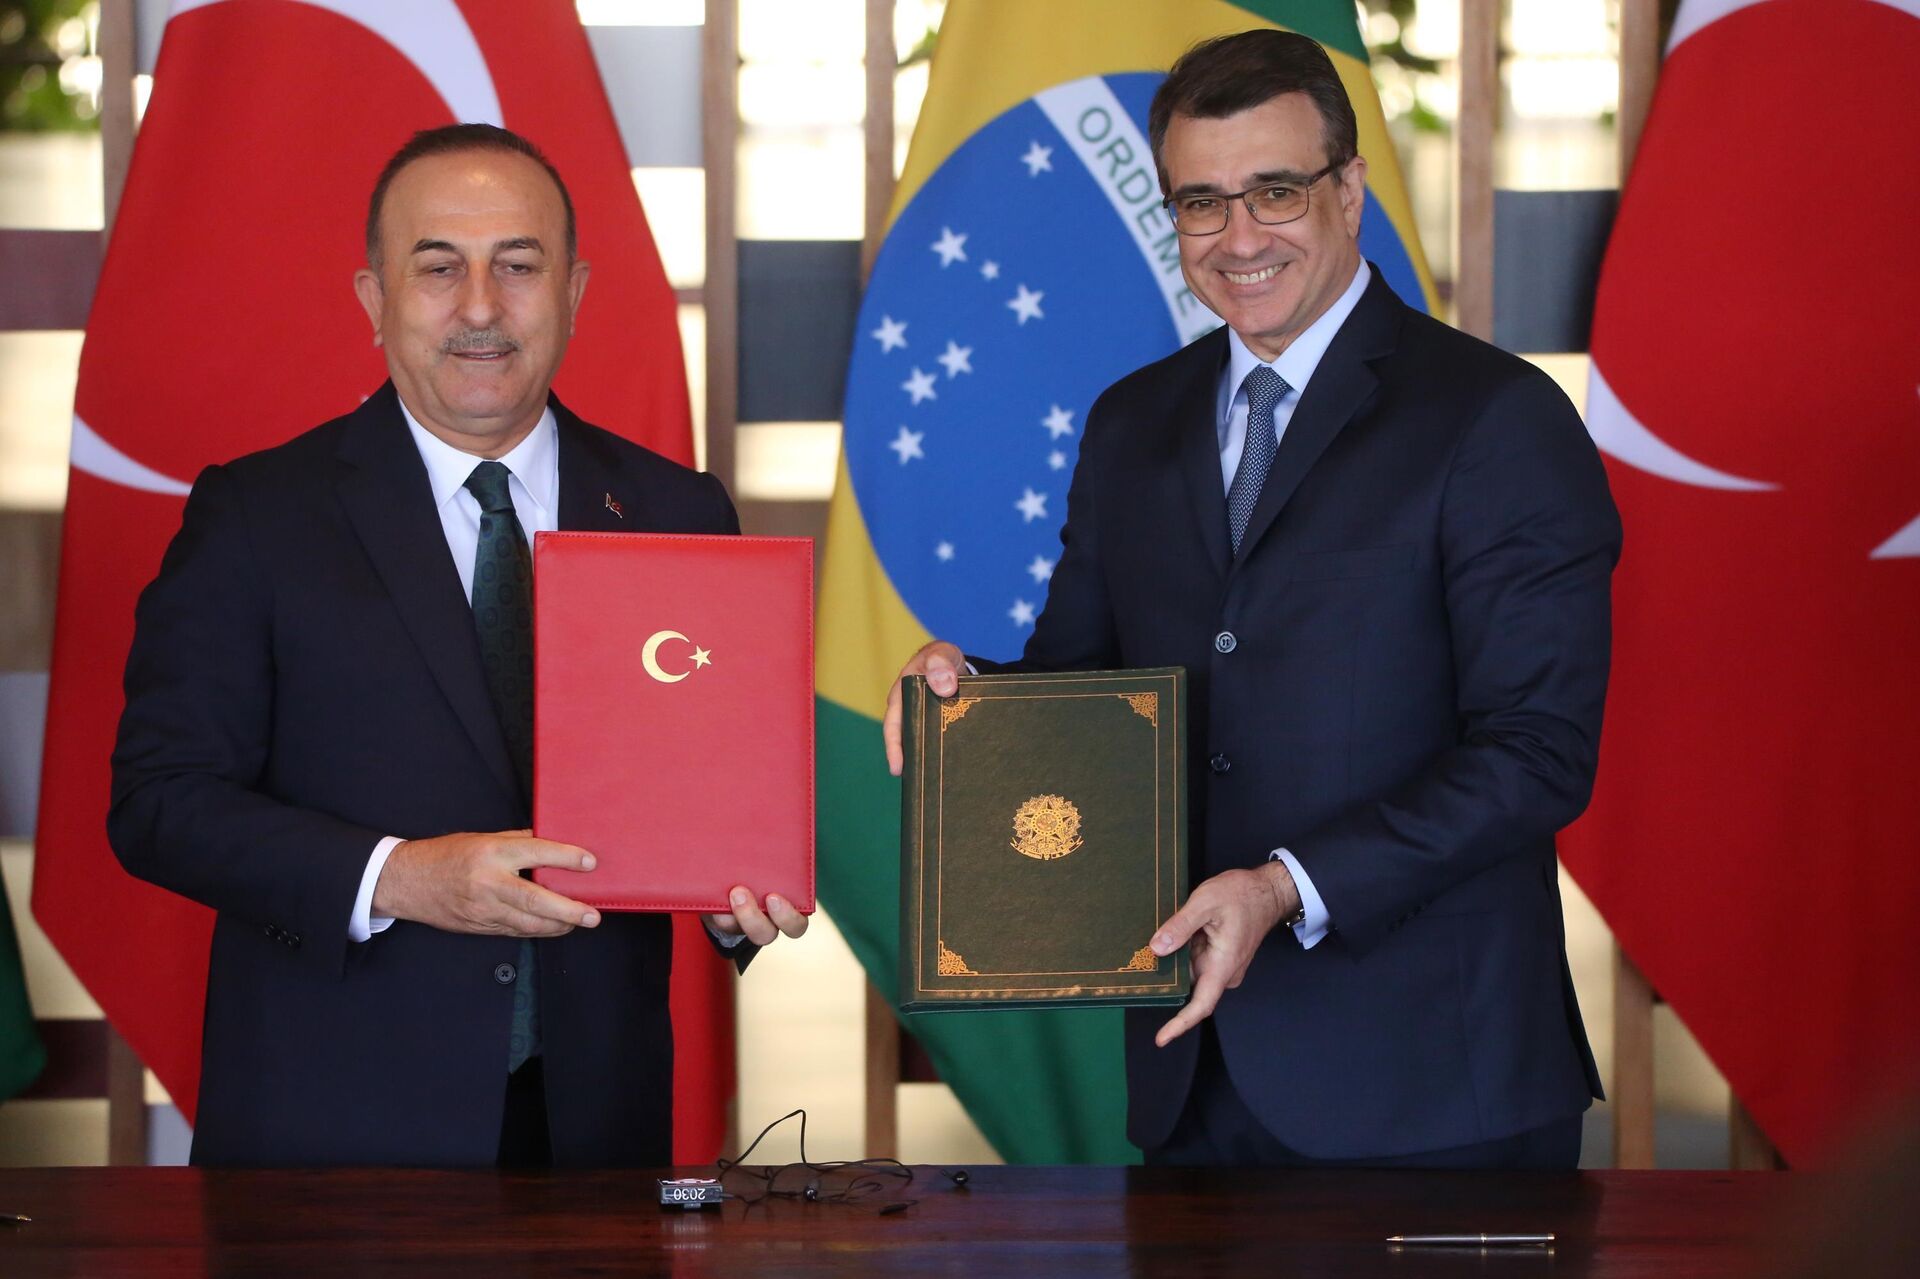 O Ministro das Relações Exteriores Carlos França, recebe o ministro de negócios estrangeiros da Turquia, Mevlut Cavusoglu no Itamaraty em Brasília (DF), 25 de abril de 2022 - Sputnik Brasil, 1920, 25.04.2022